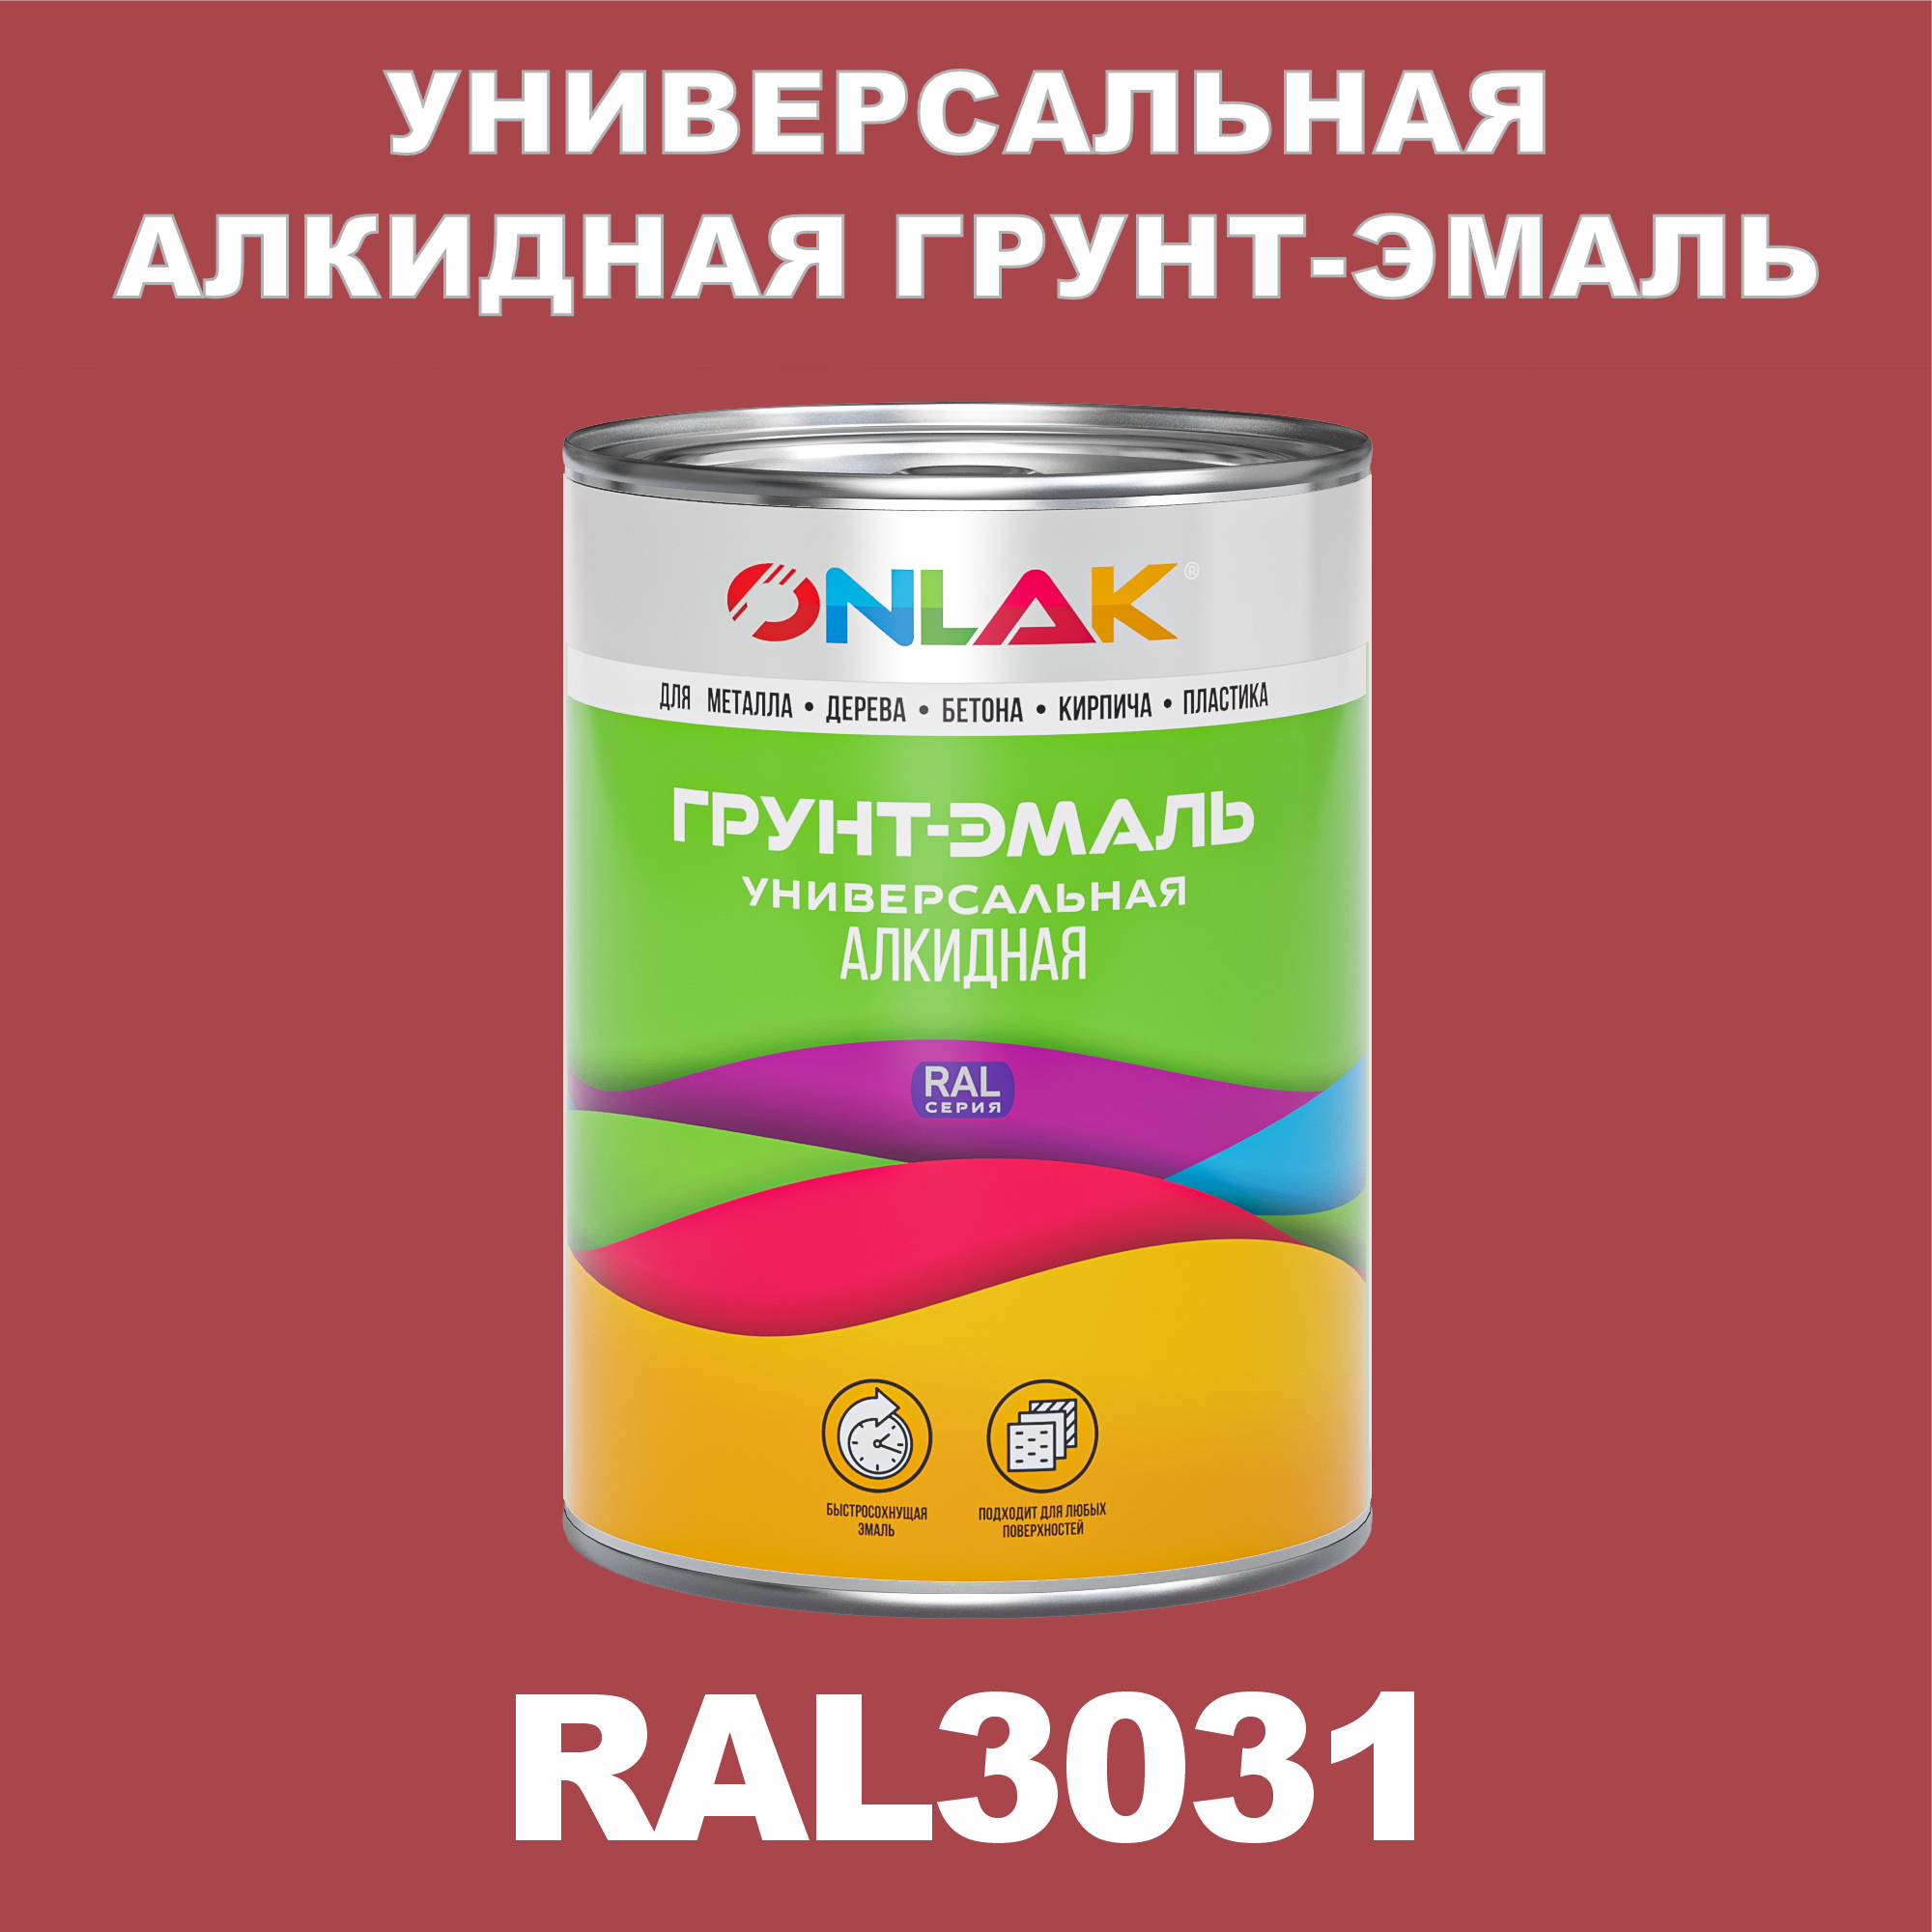 Грунт-эмаль ONLAK 1К RAL3031 антикоррозионная алкидная по металлу по ржавчине 1 кг грунт эмаль yollo по ржавчине алкидная серая 0 9 кг